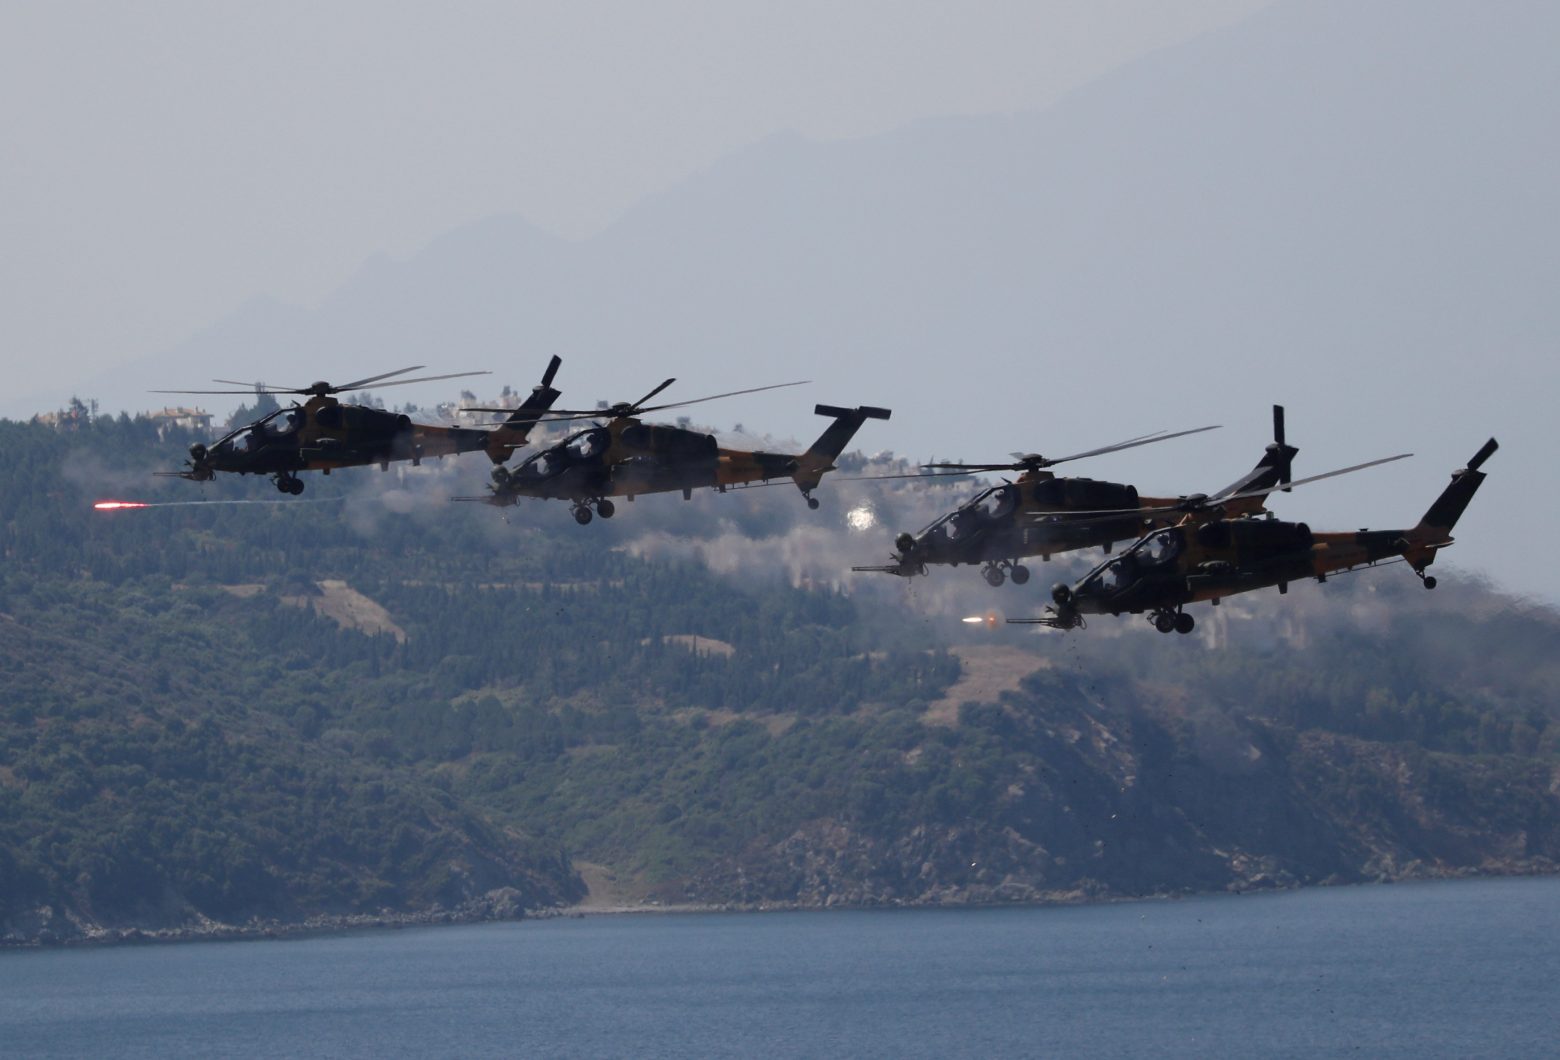 Τουρκία: Επιμένει στην αποστρατιωτικοποίηση των ελληνικών νησιών - Επιστολή στον ΟΗΕ